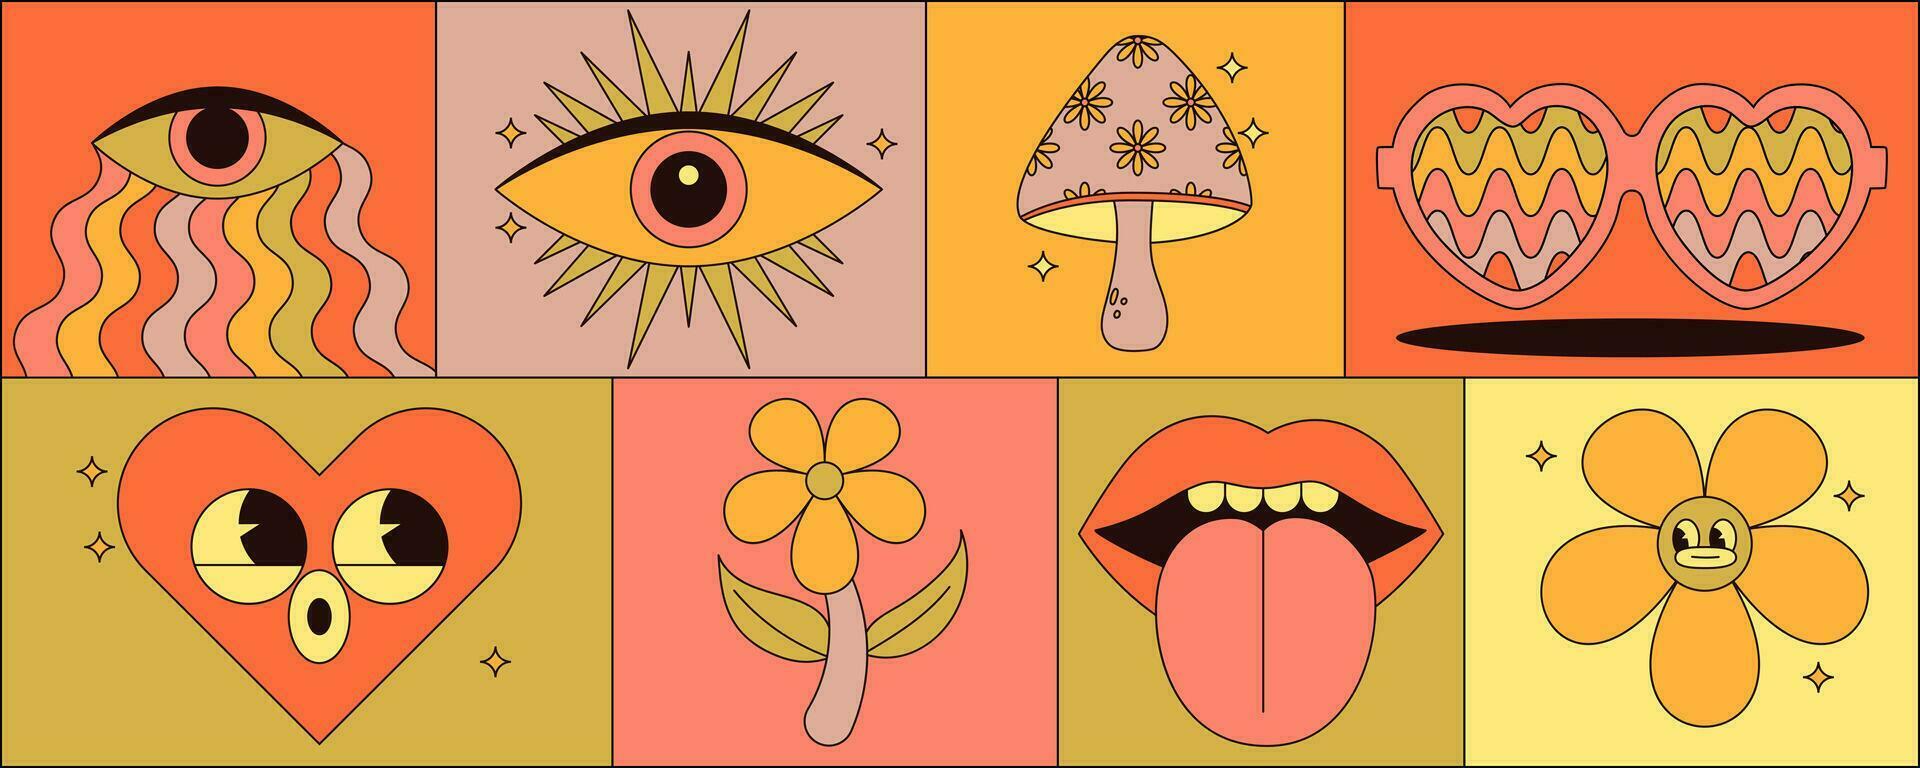 maravilloso hippie pegatina conjunto con trippy hongos, flor, labios, ojos, Gafas de sol y más. Clásico vector ilustraciones